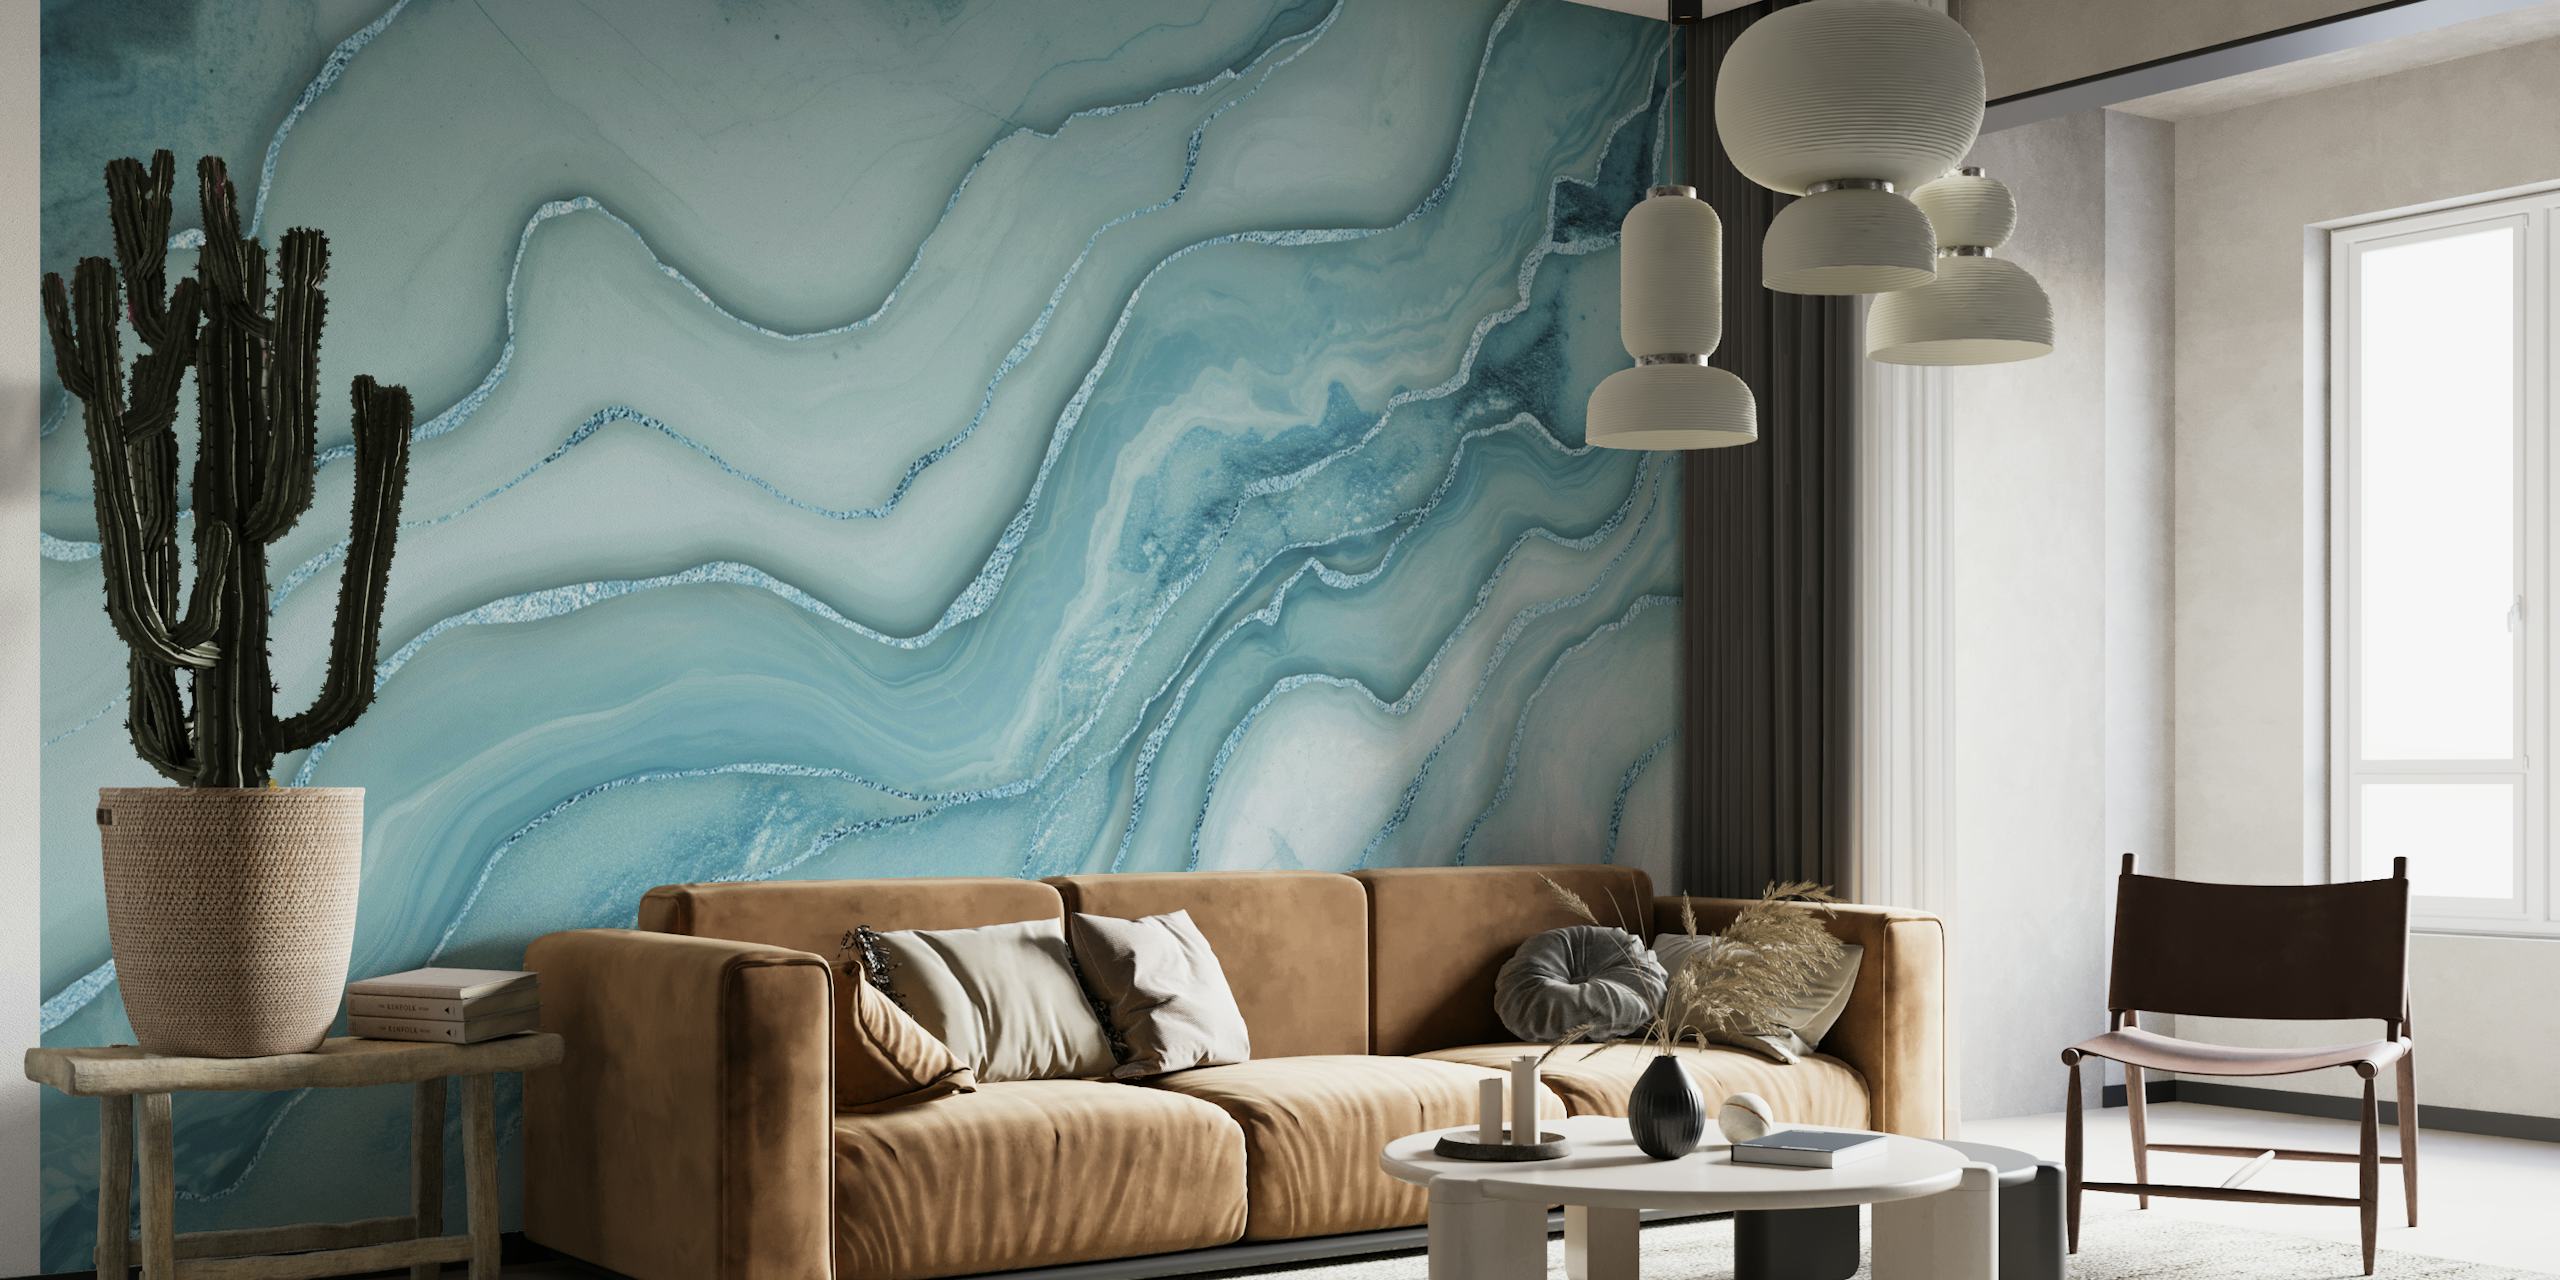 Mural de pared con estampado de mármol azul agua y detalles grises arremolinados que crean una atmósfera lujosa y serena.